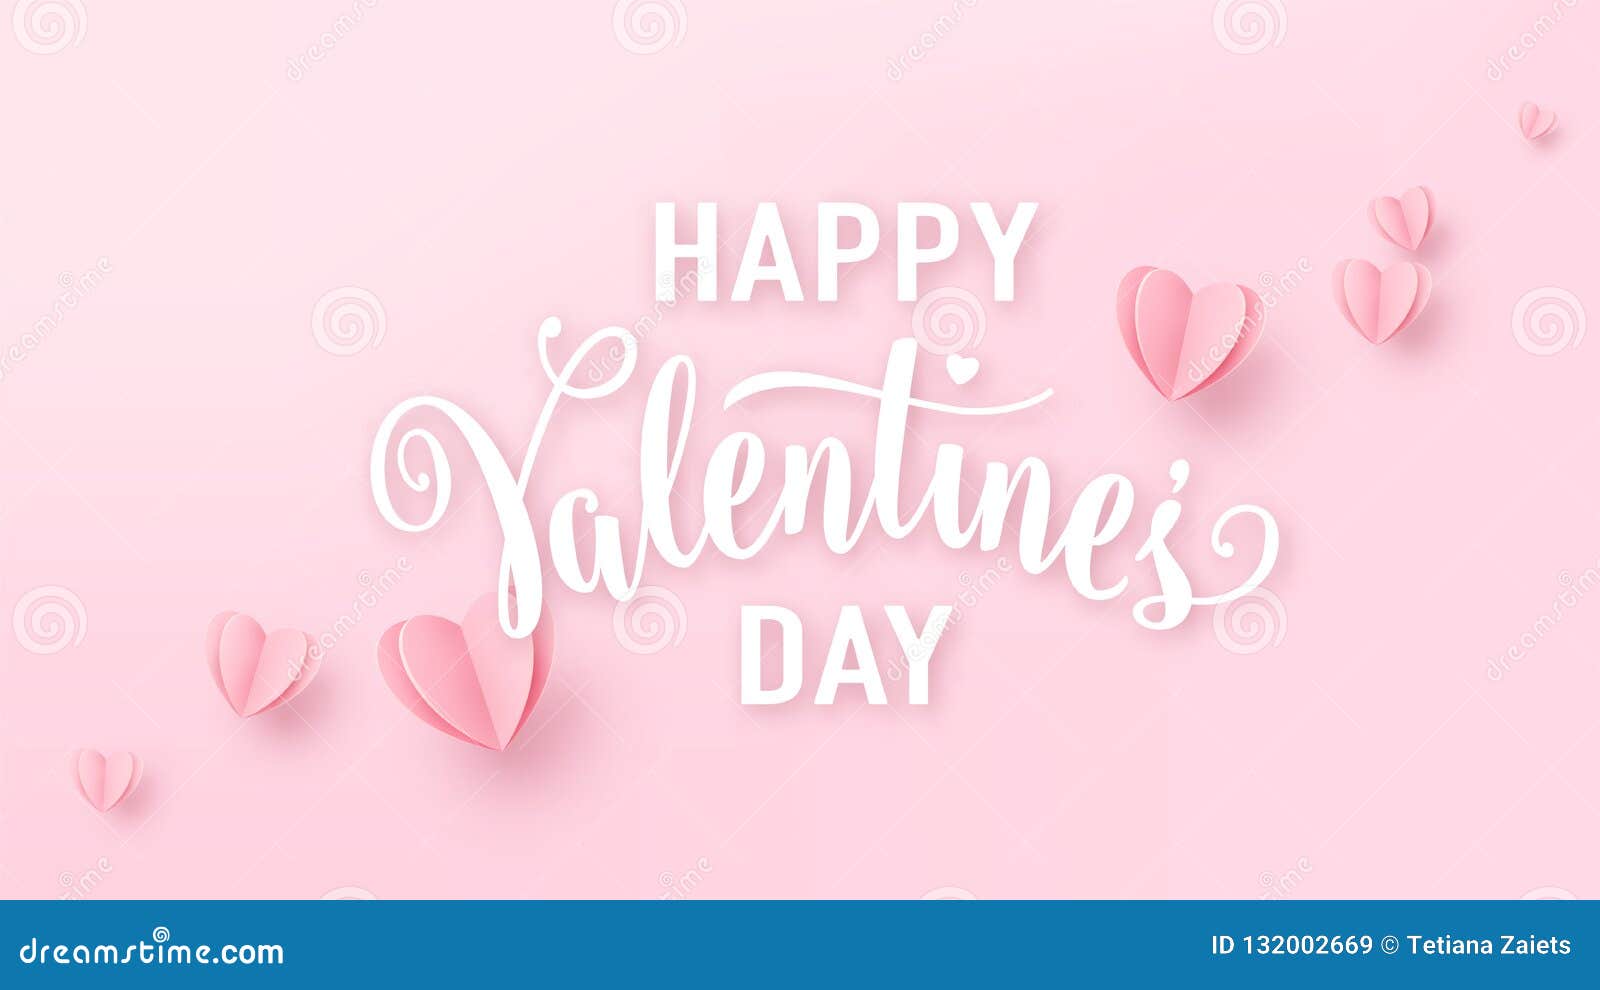 Một phong cách nền hồng nồng nhiệt sẽ làm cho trang trí tiệc Valentine của bạn thêm phần lãng mạn và ấm áp. Hãy xem hình ảnh để lấy ý tưởng kịp thời cho bữa tiệc của bạn nhé!